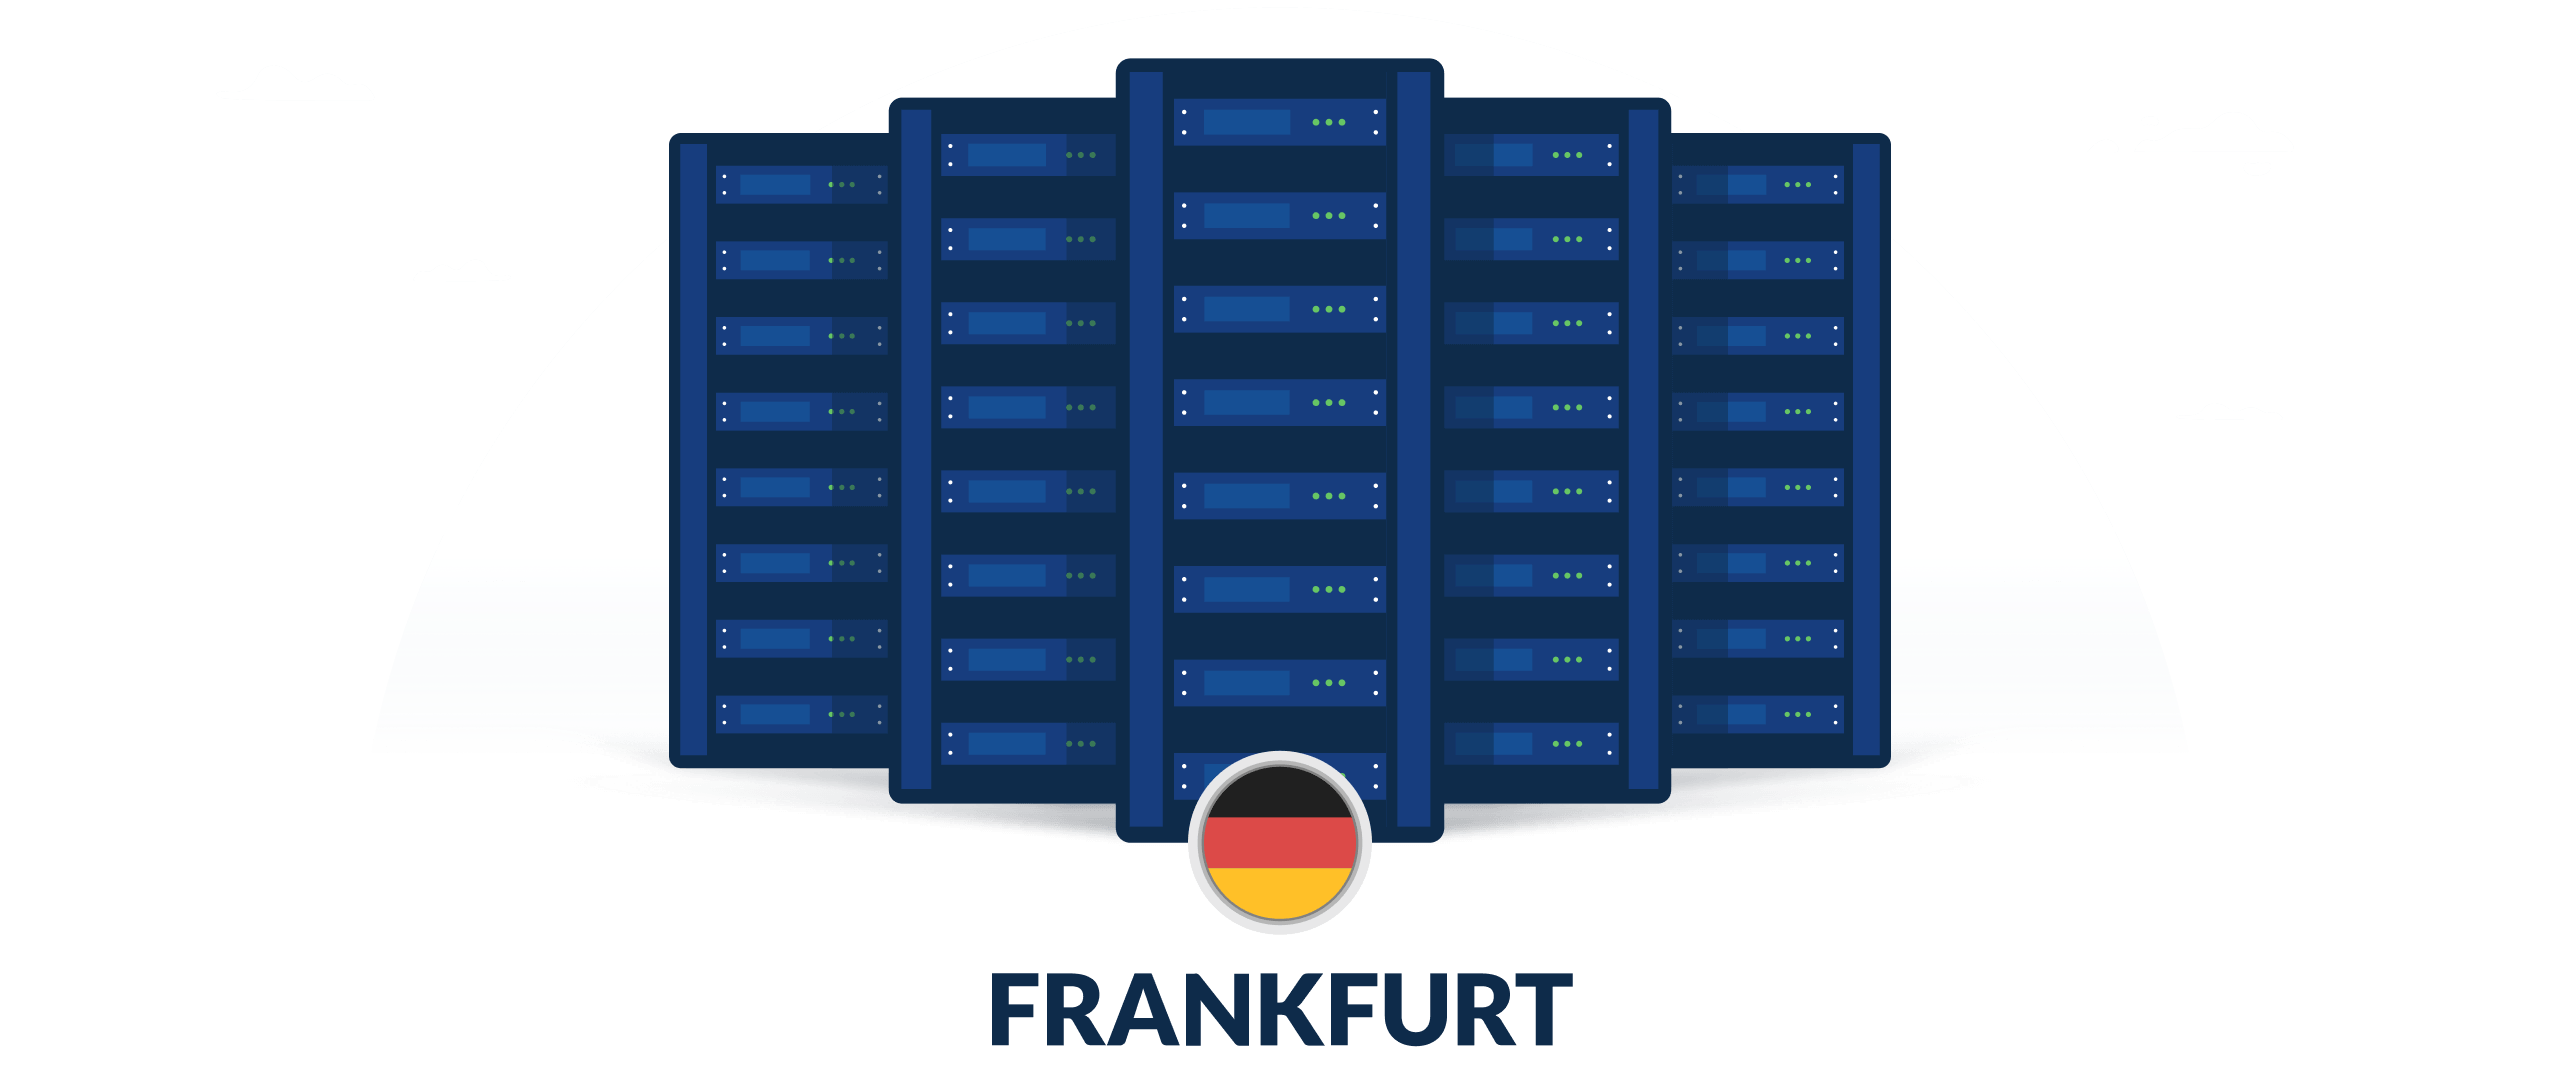 VPN servers in Frankfurt, Germany